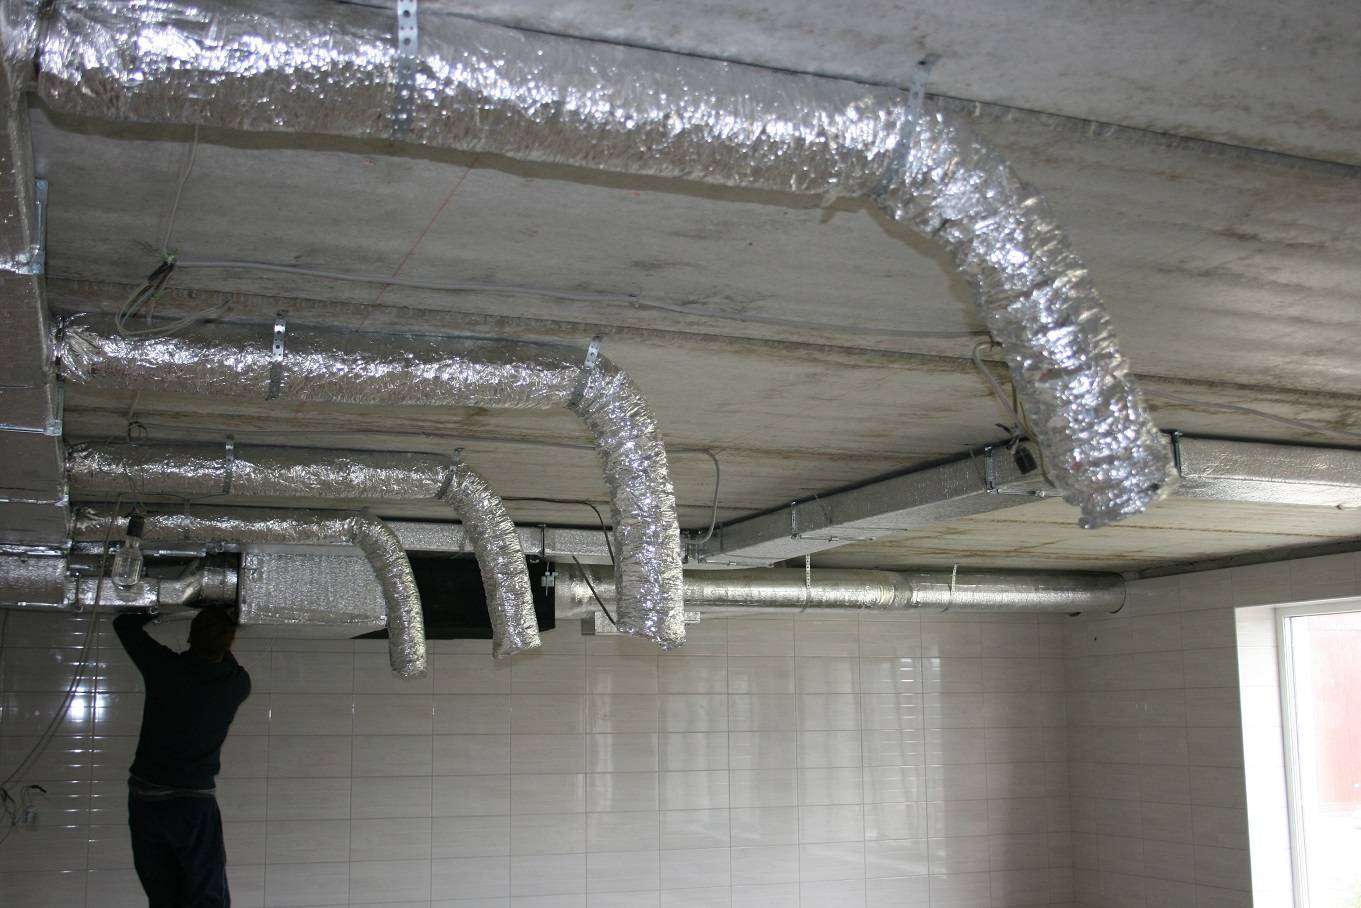 Утеплитель для вентиляционных труб: для чего необходим, виды материалов, технология проведения тепловой изоляции - ventilyaziya.ru